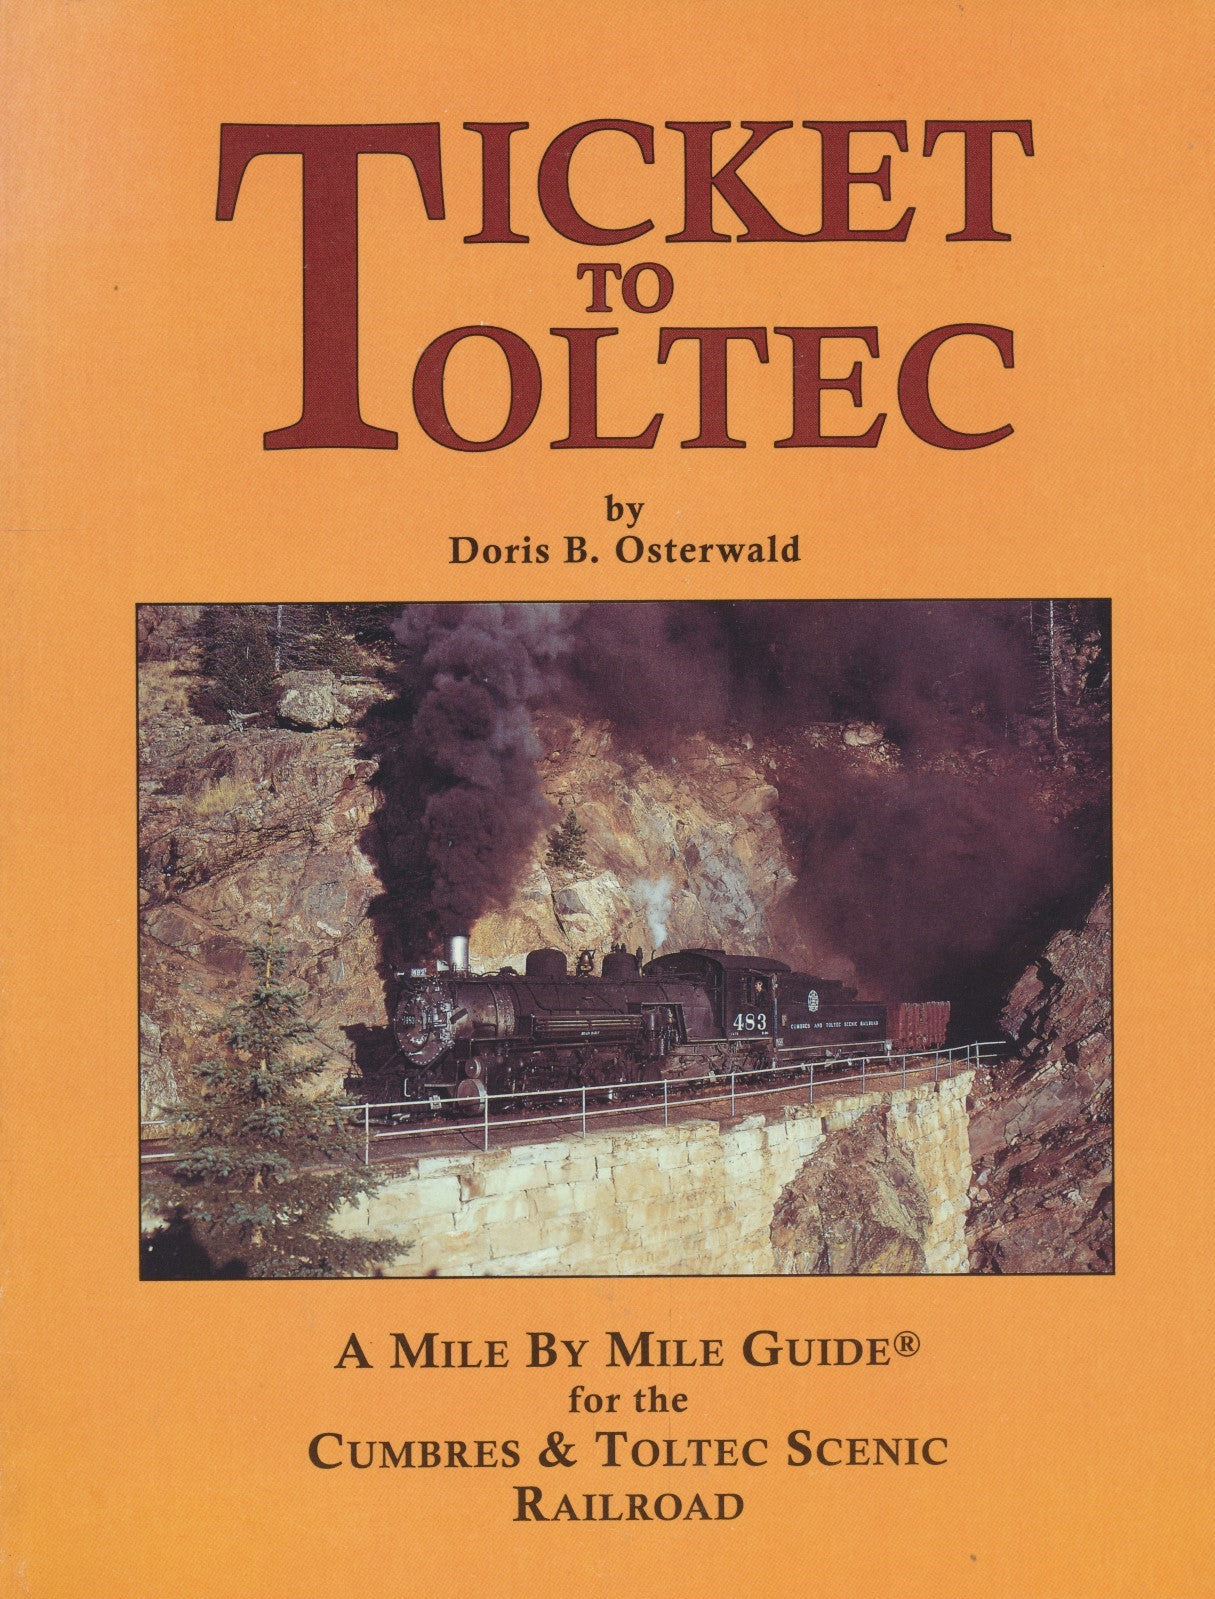 Ticket to Toltec